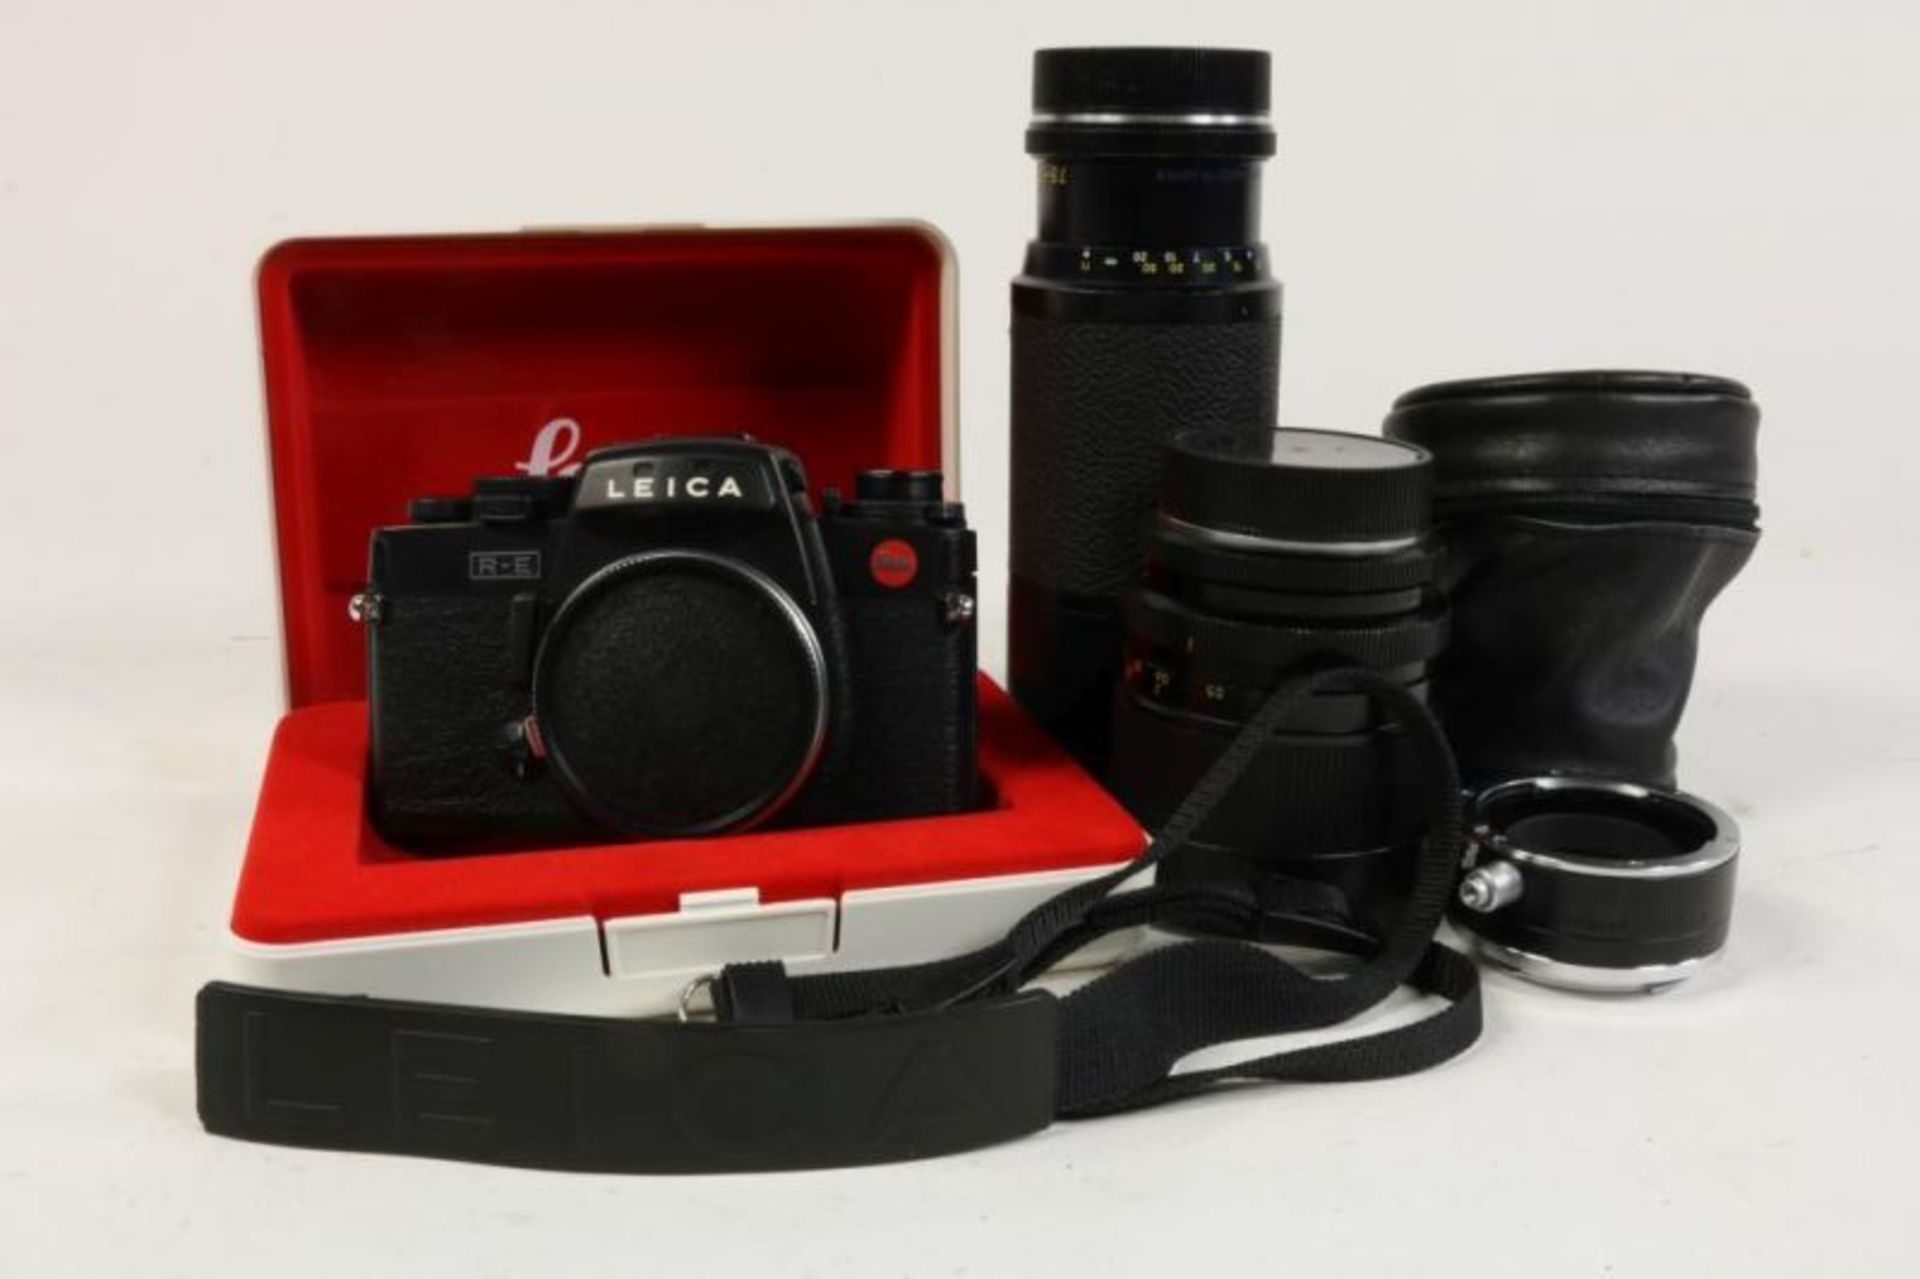 Leica RE spiegelreflexcamera met diverse lensen, macro-ring, waarbij originele doos